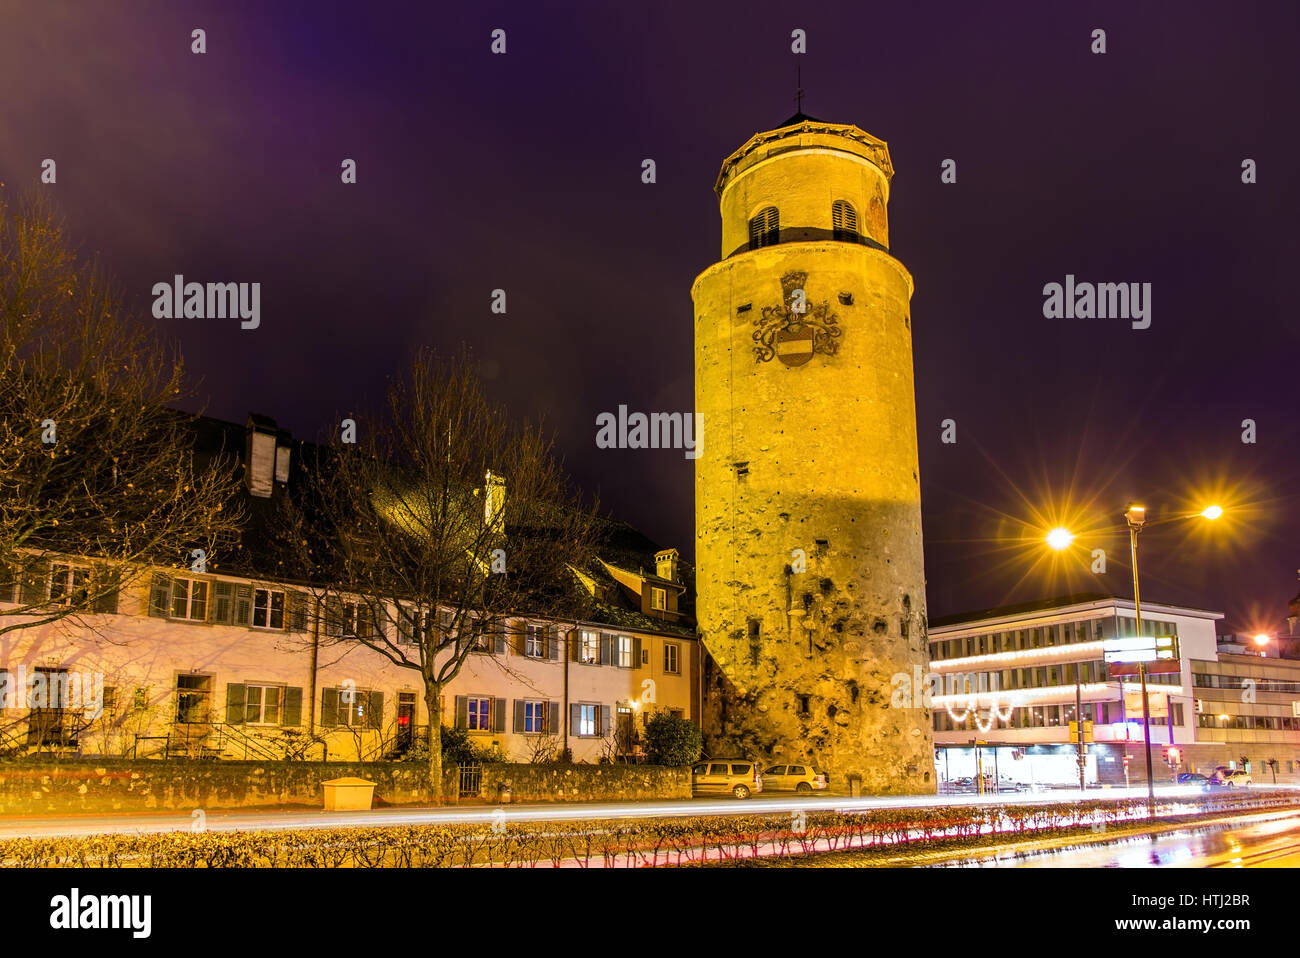 Katzenturm tower in Feldkirch - Austria Stock Photo